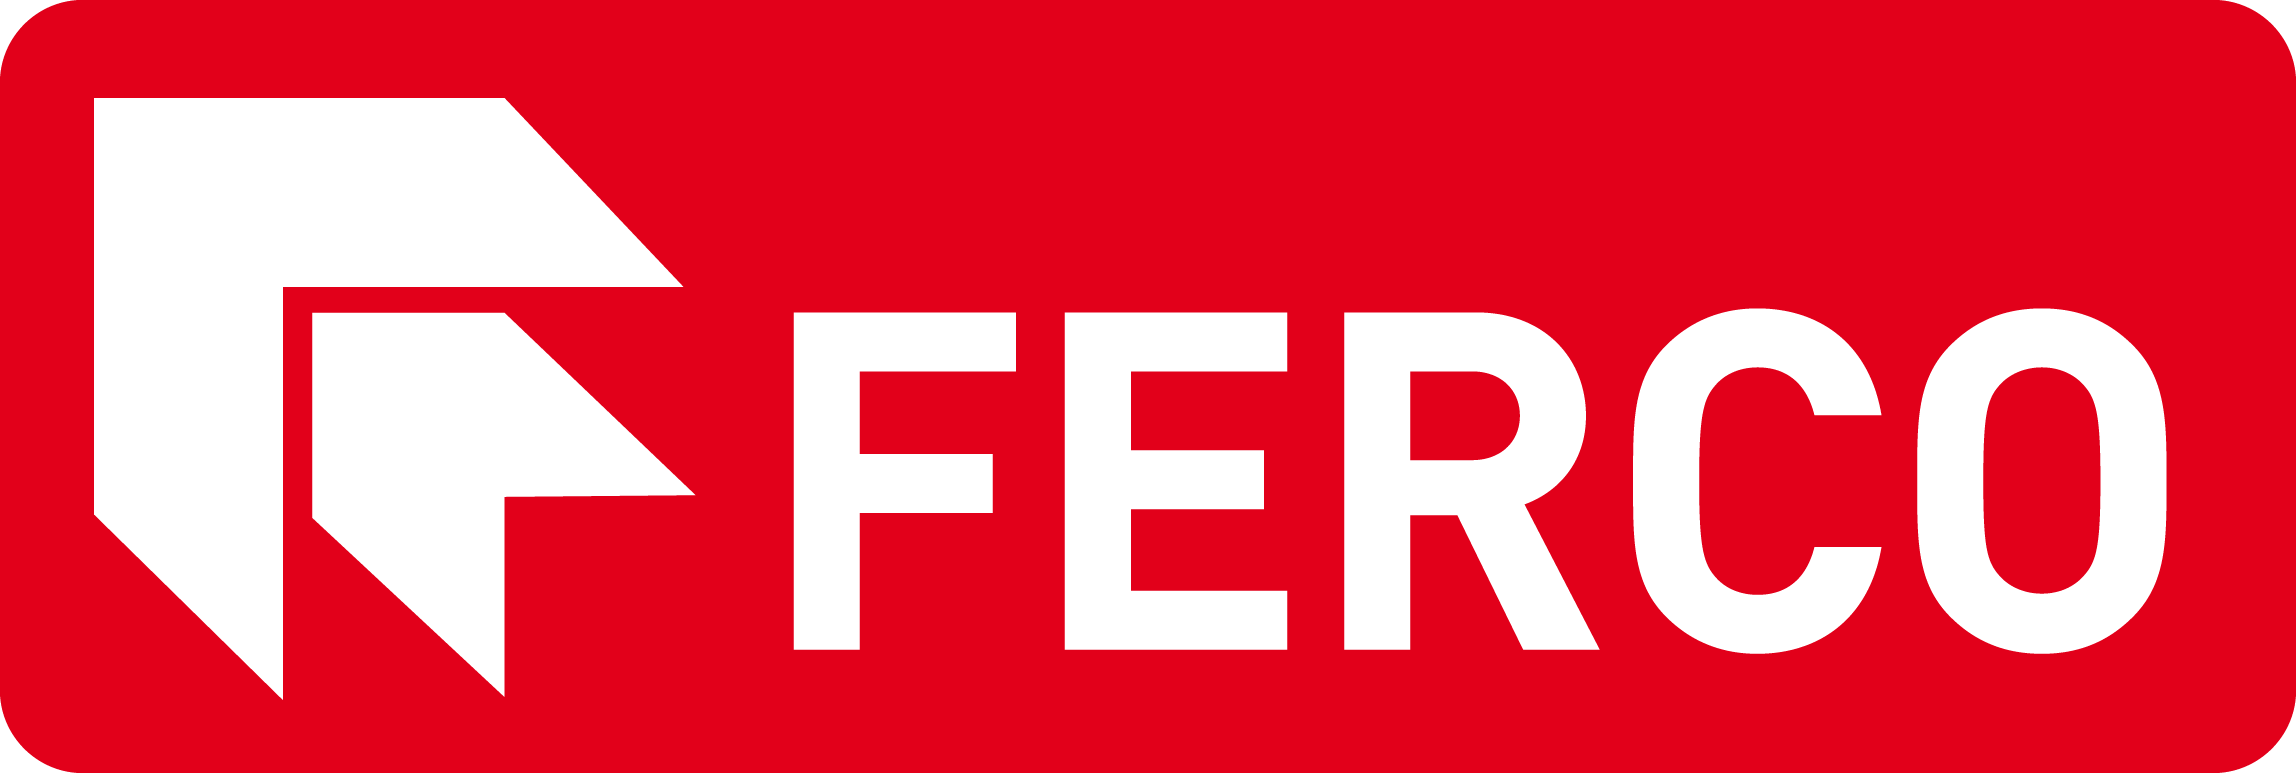 FERCO